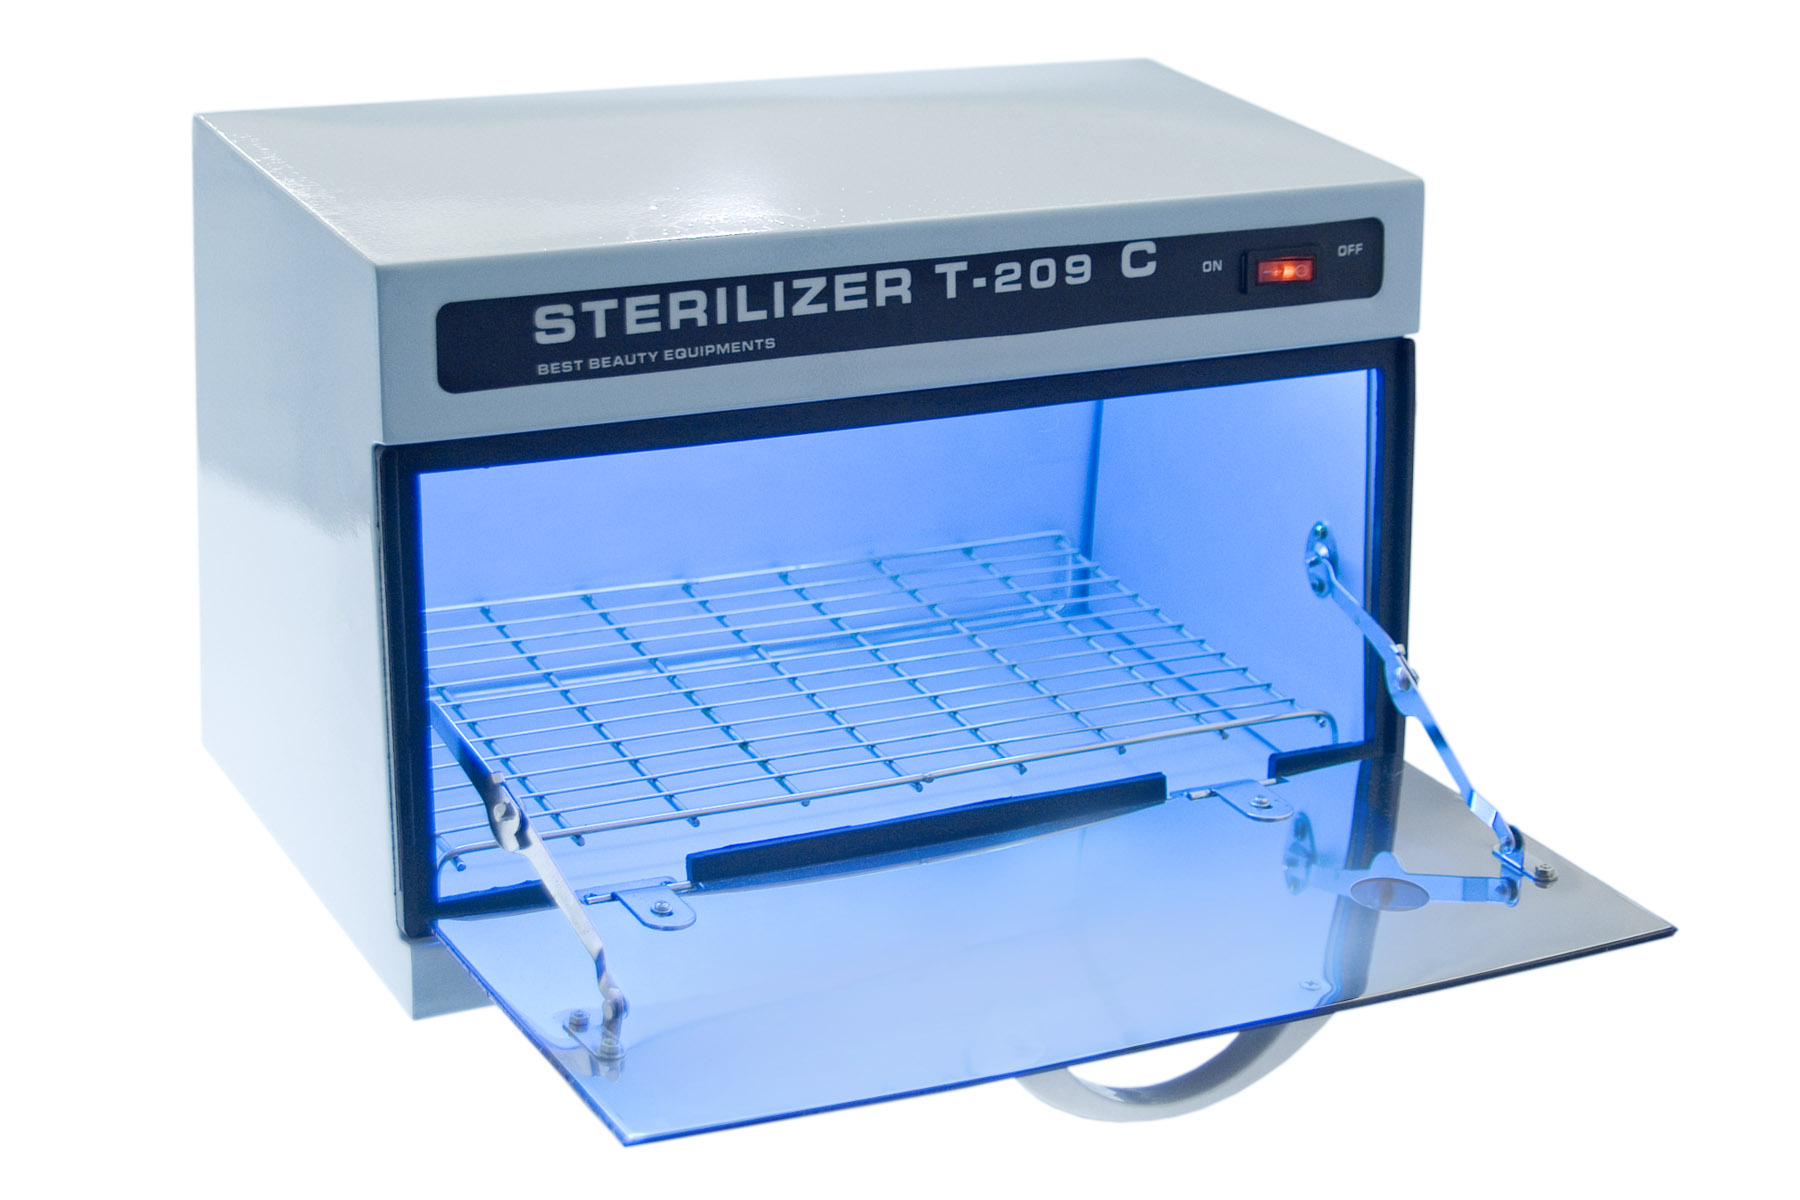 Мед стерилизатор. UV Sterilizer для инструментов. УФ стерилизатор Sterilizer. Стерилизатор конвейерный УФ-1100. Sterilizer t-209.